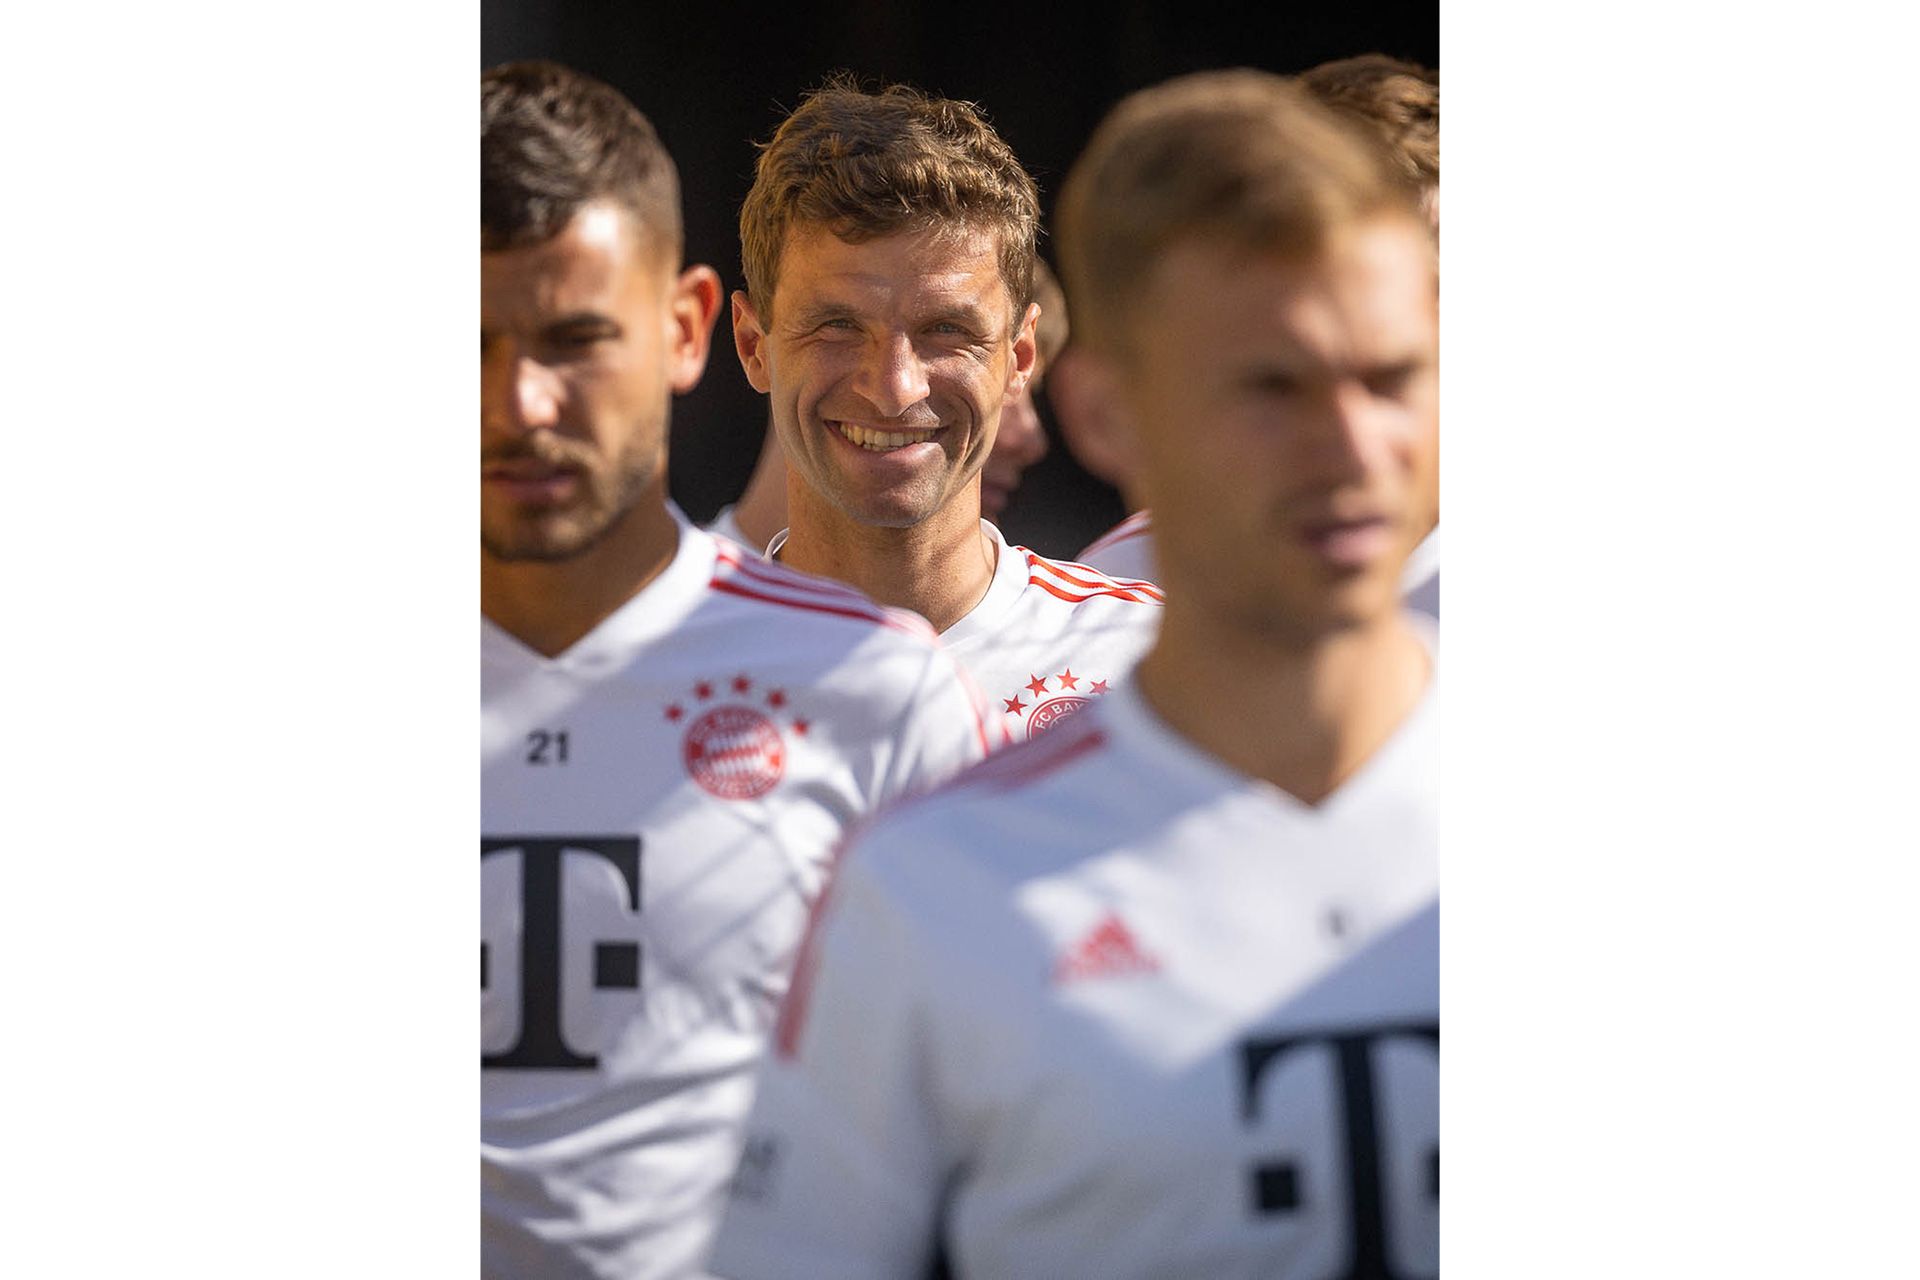 Lachender Thomas Müller zwischen konzentrierten Team-Kollegen während das Team auf das Spielfeld läuft